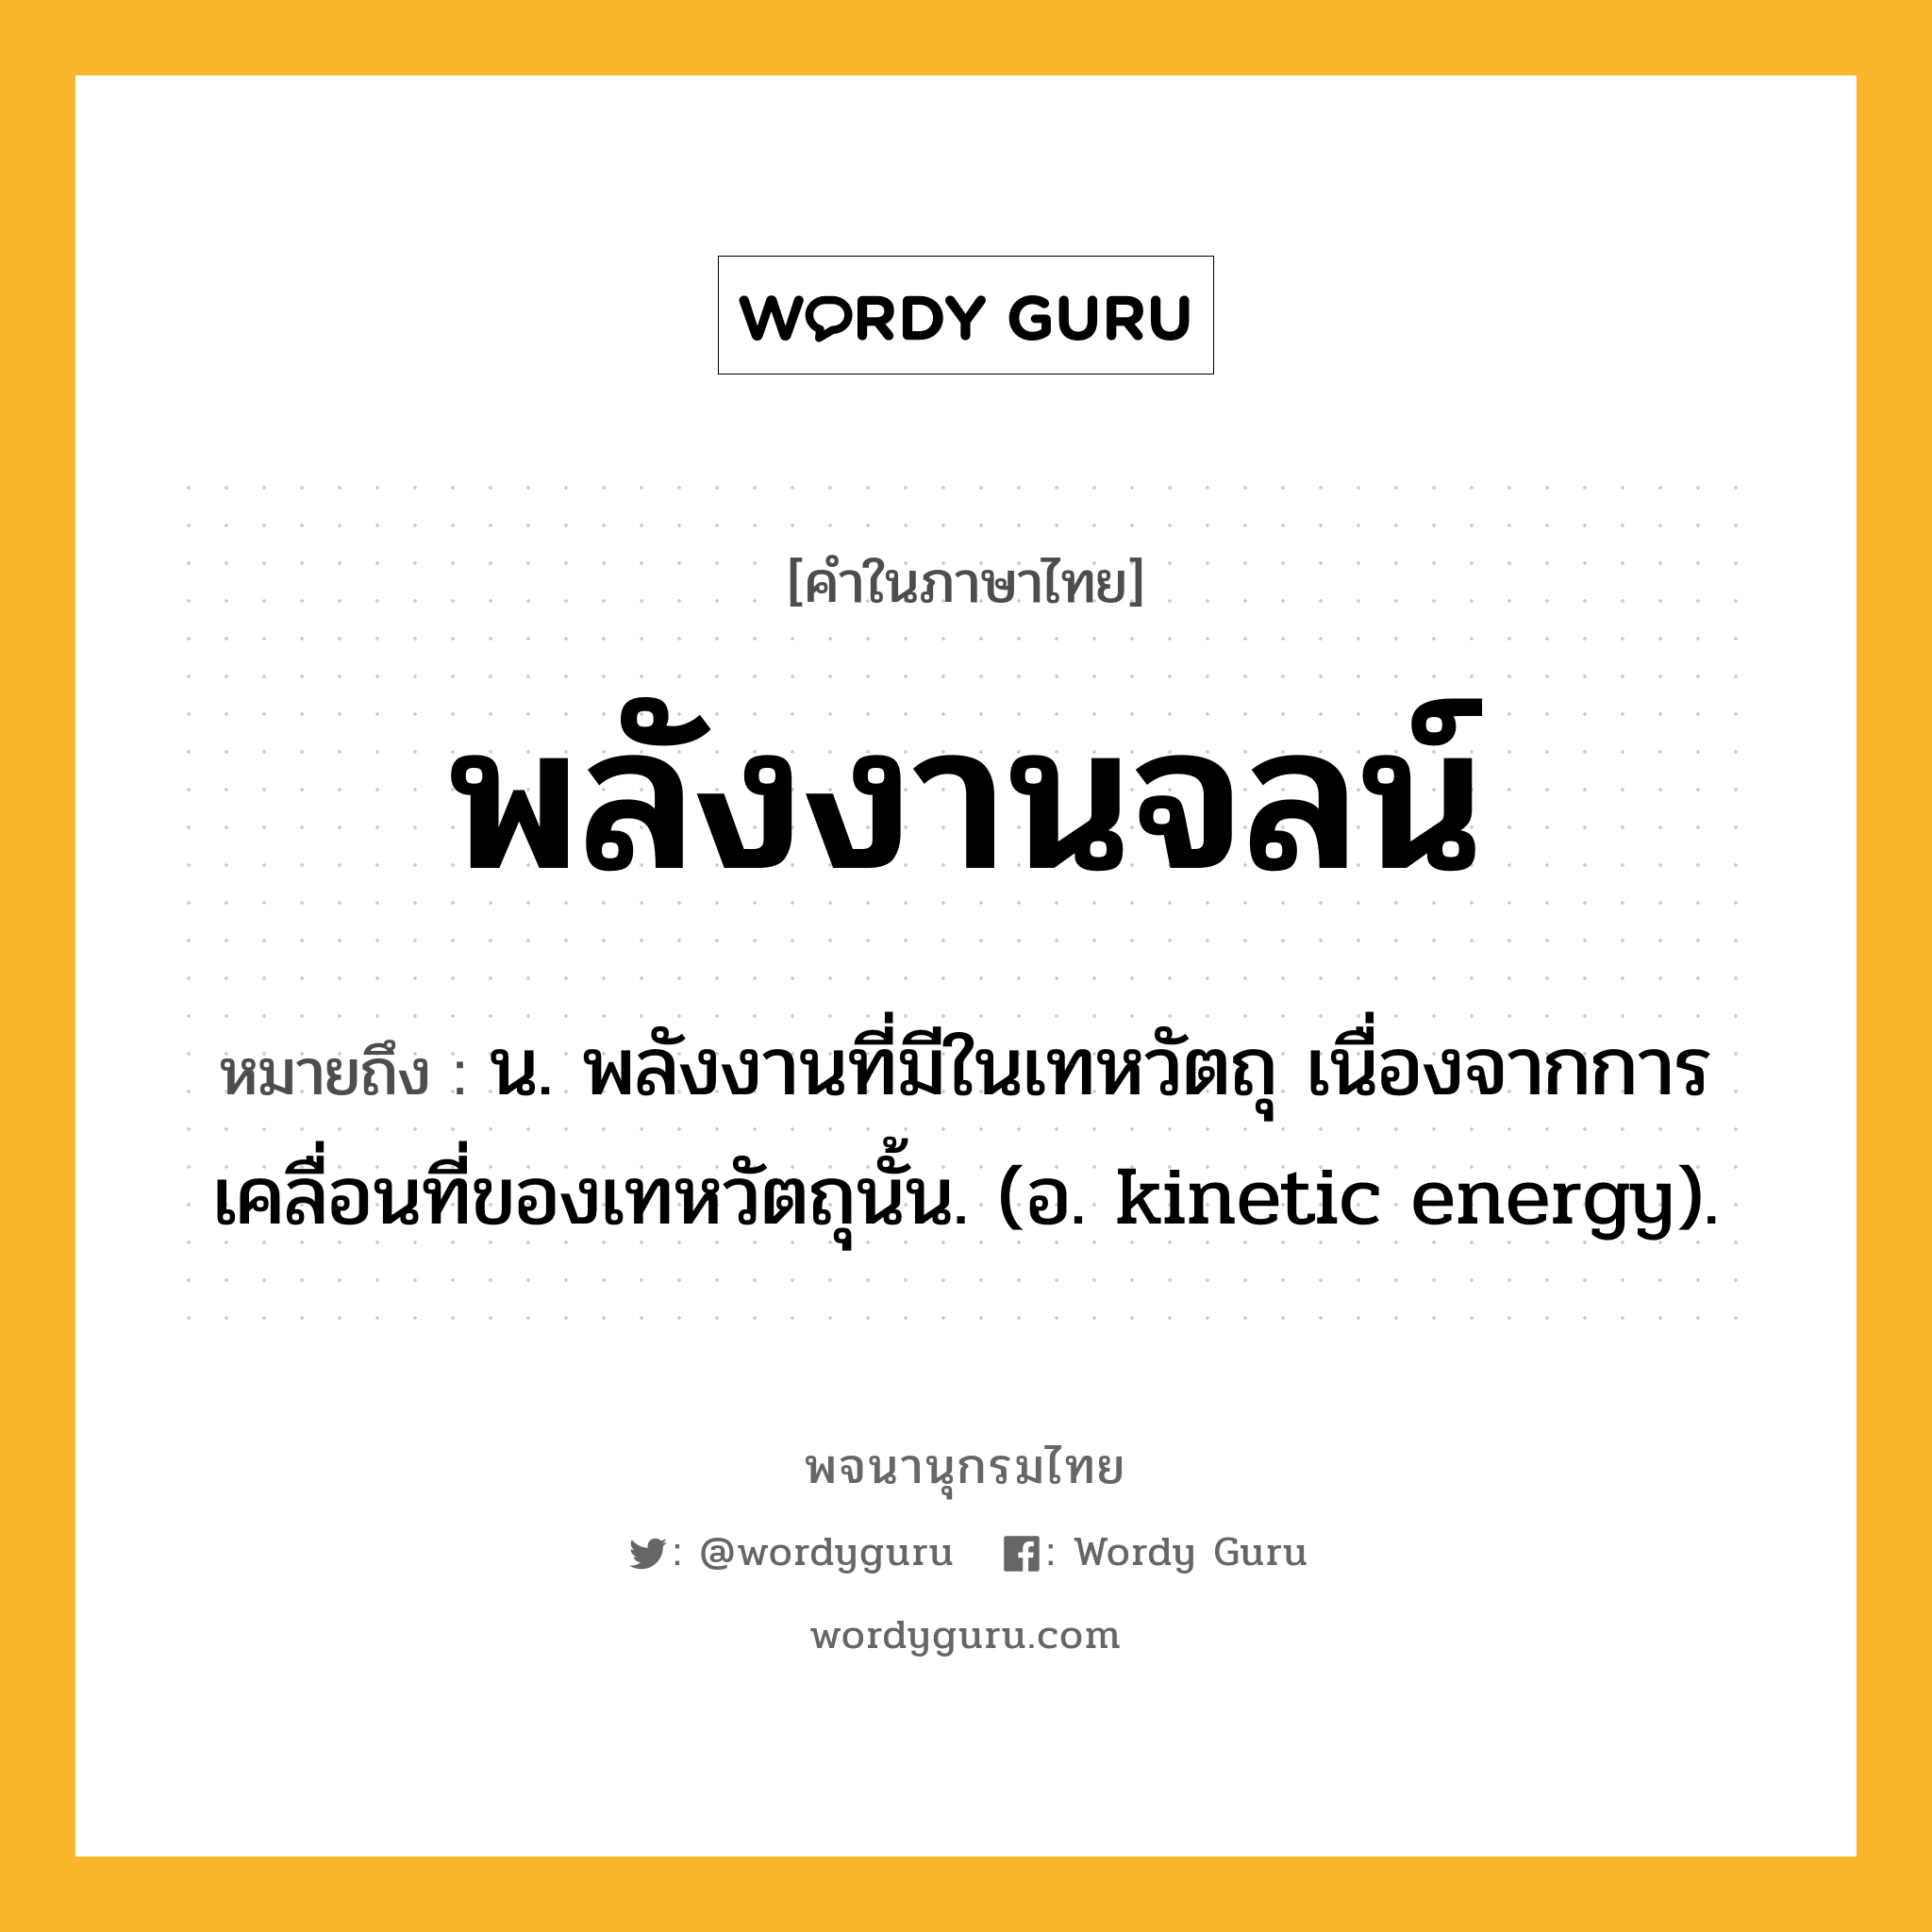 พลังงานจลน์ หมายถึงอะไร?, คำในภาษาไทย พลังงานจลน์ หมายถึง น. พลังงานที่มีในเทหวัตถุ เนื่องจากการเคลื่อนที่ของเทหวัตถุนั้น. (อ. kinetic energy).